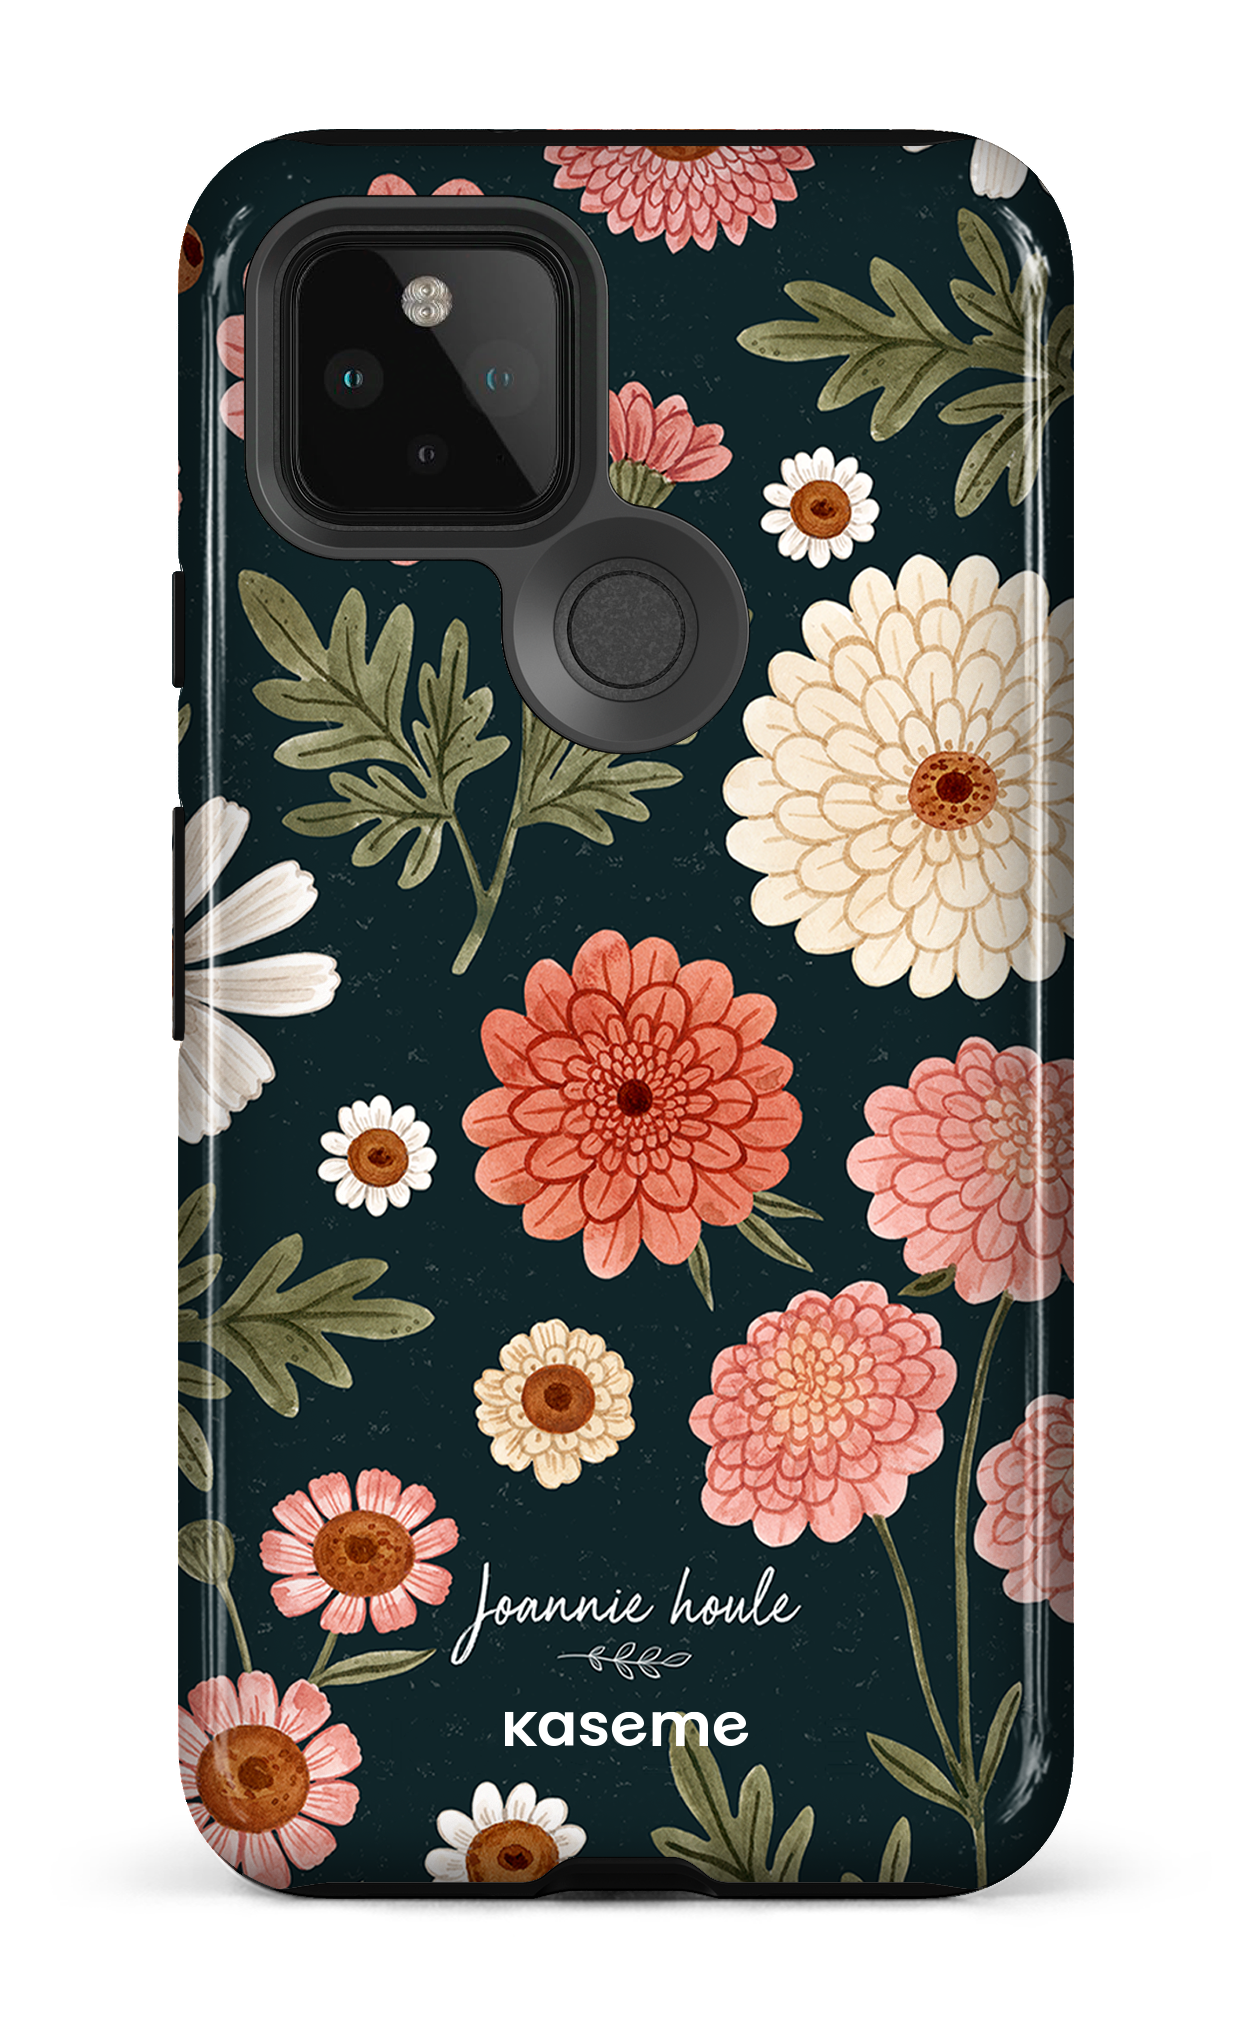 Chrysanthemums by Joannie Houle - Google Pixel 5